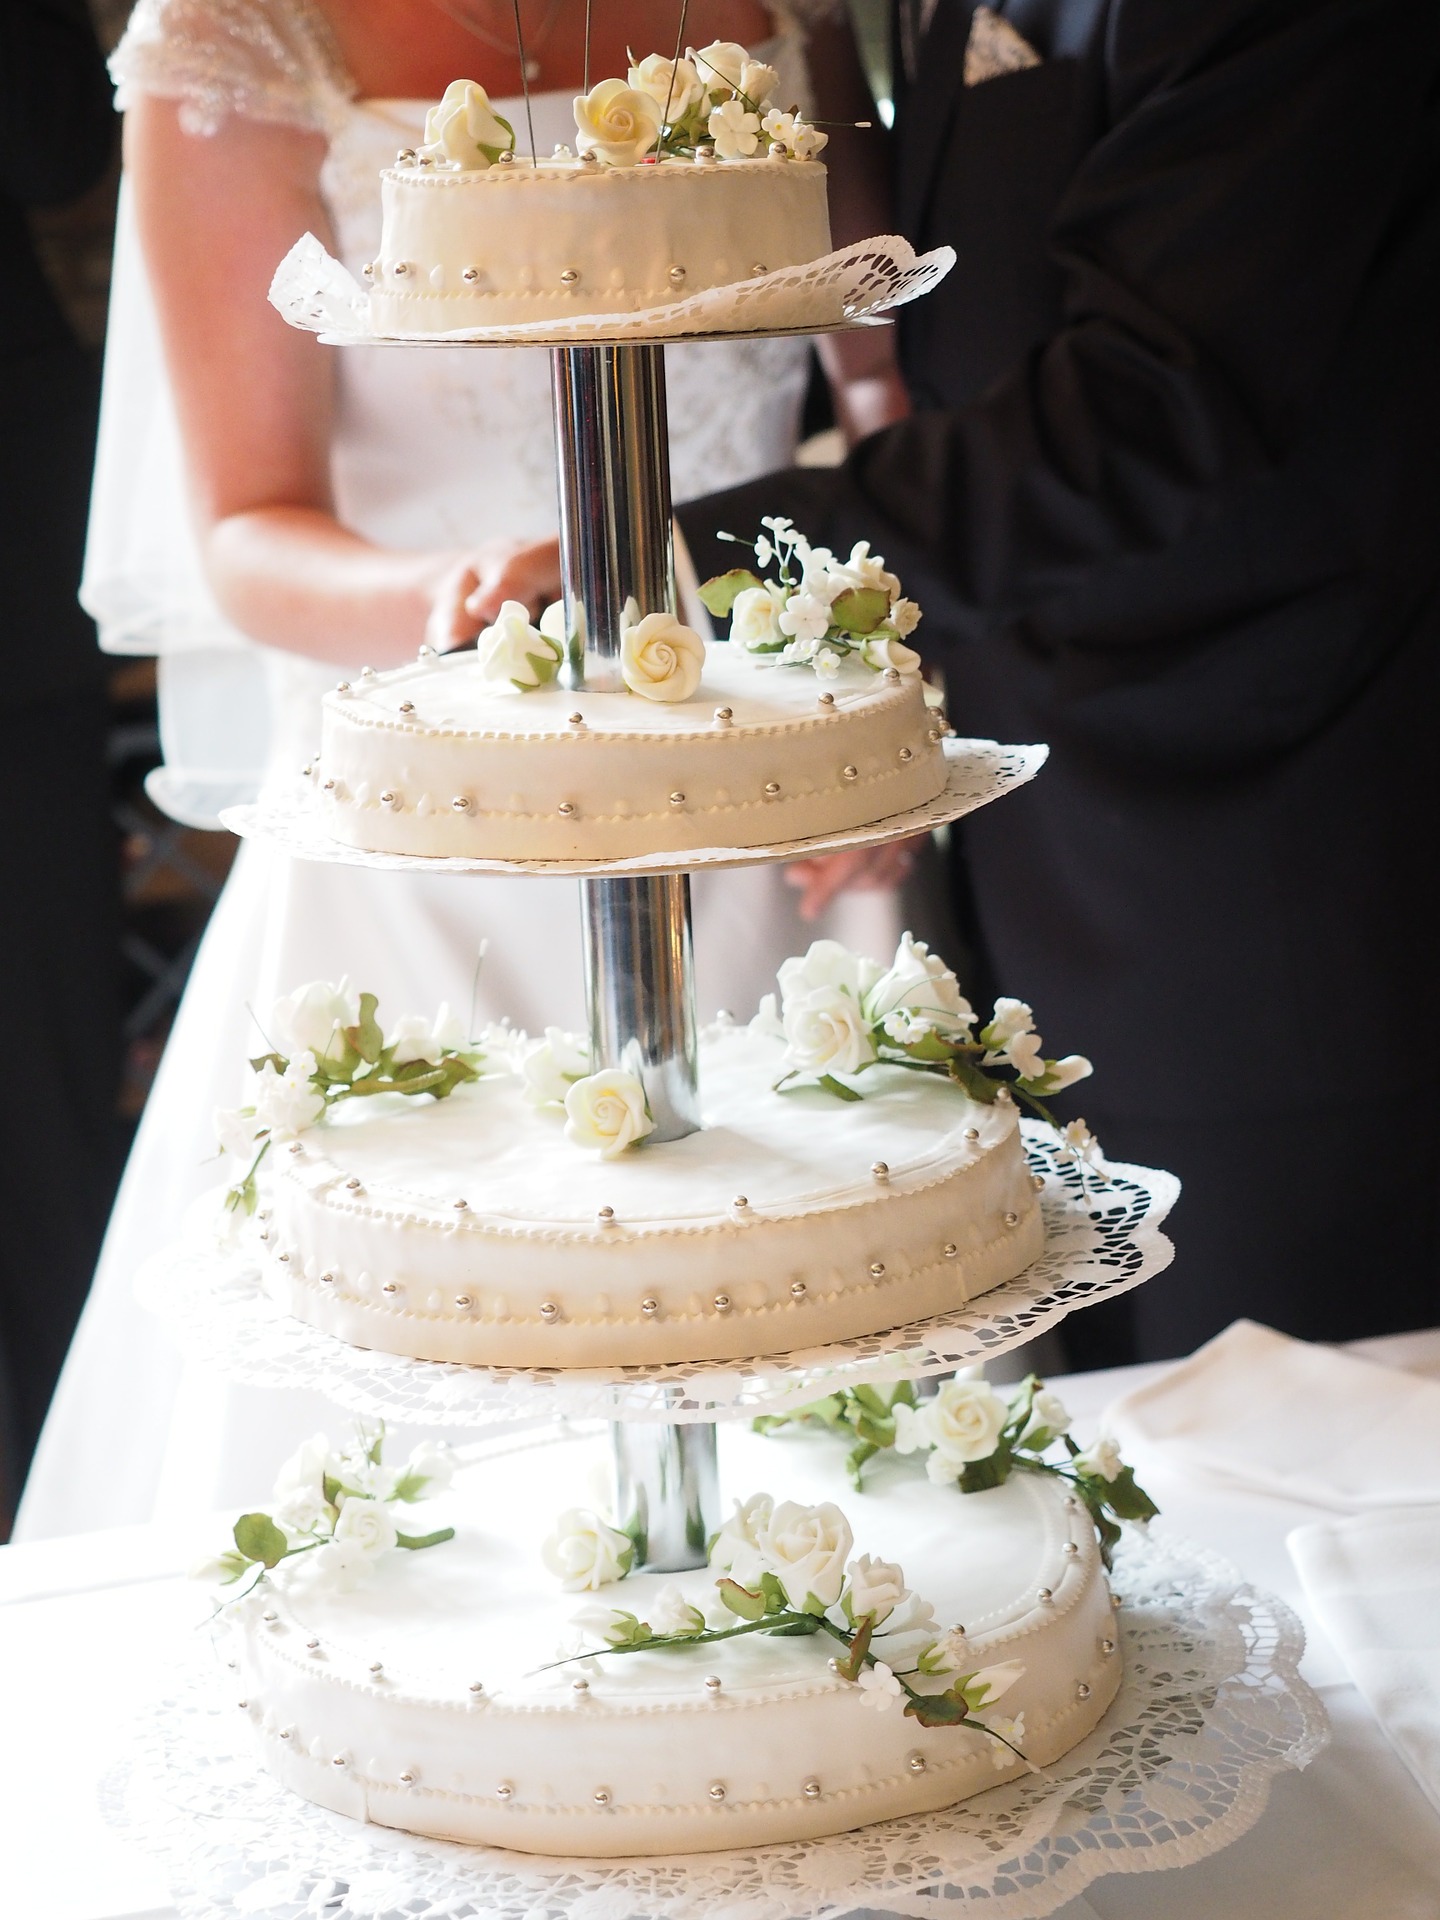 La meravigliosa torta a piani per il tuo matrimonio: un capolavoro dolce da gustare!